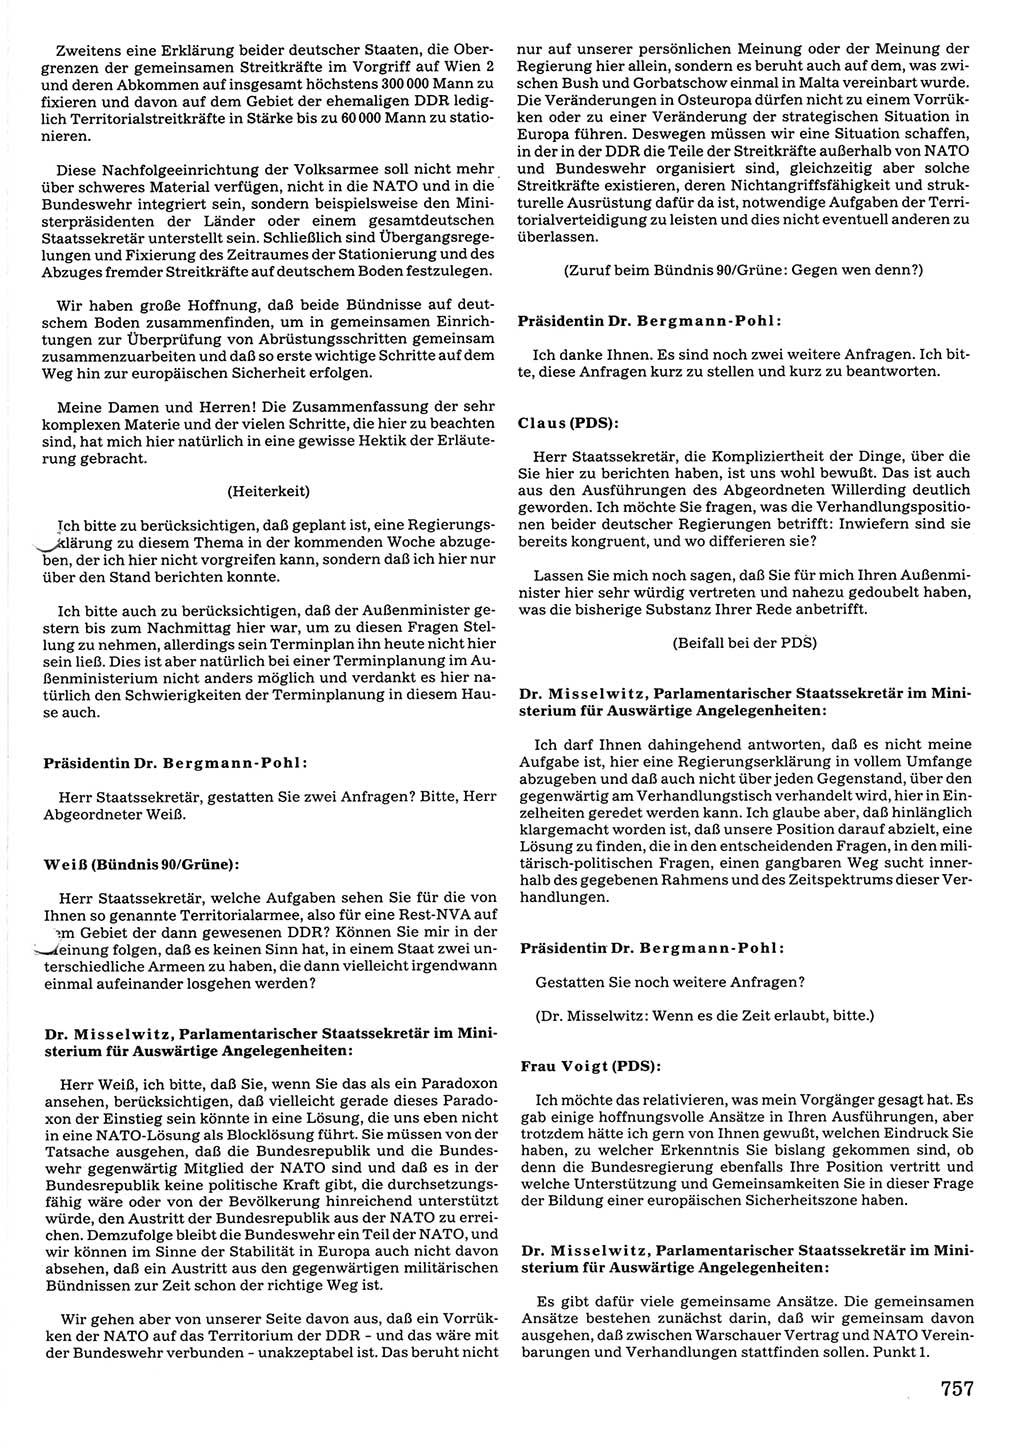 Tagungen der Volkskammer (VK) der Deutschen Demokratischen Republik (DDR), 10. Wahlperiode 1990, Seite 757 (VK. DDR 10. WP. 1990, Prot. Tg. 1-38, 5.4.-2.10.1990, S. 757)